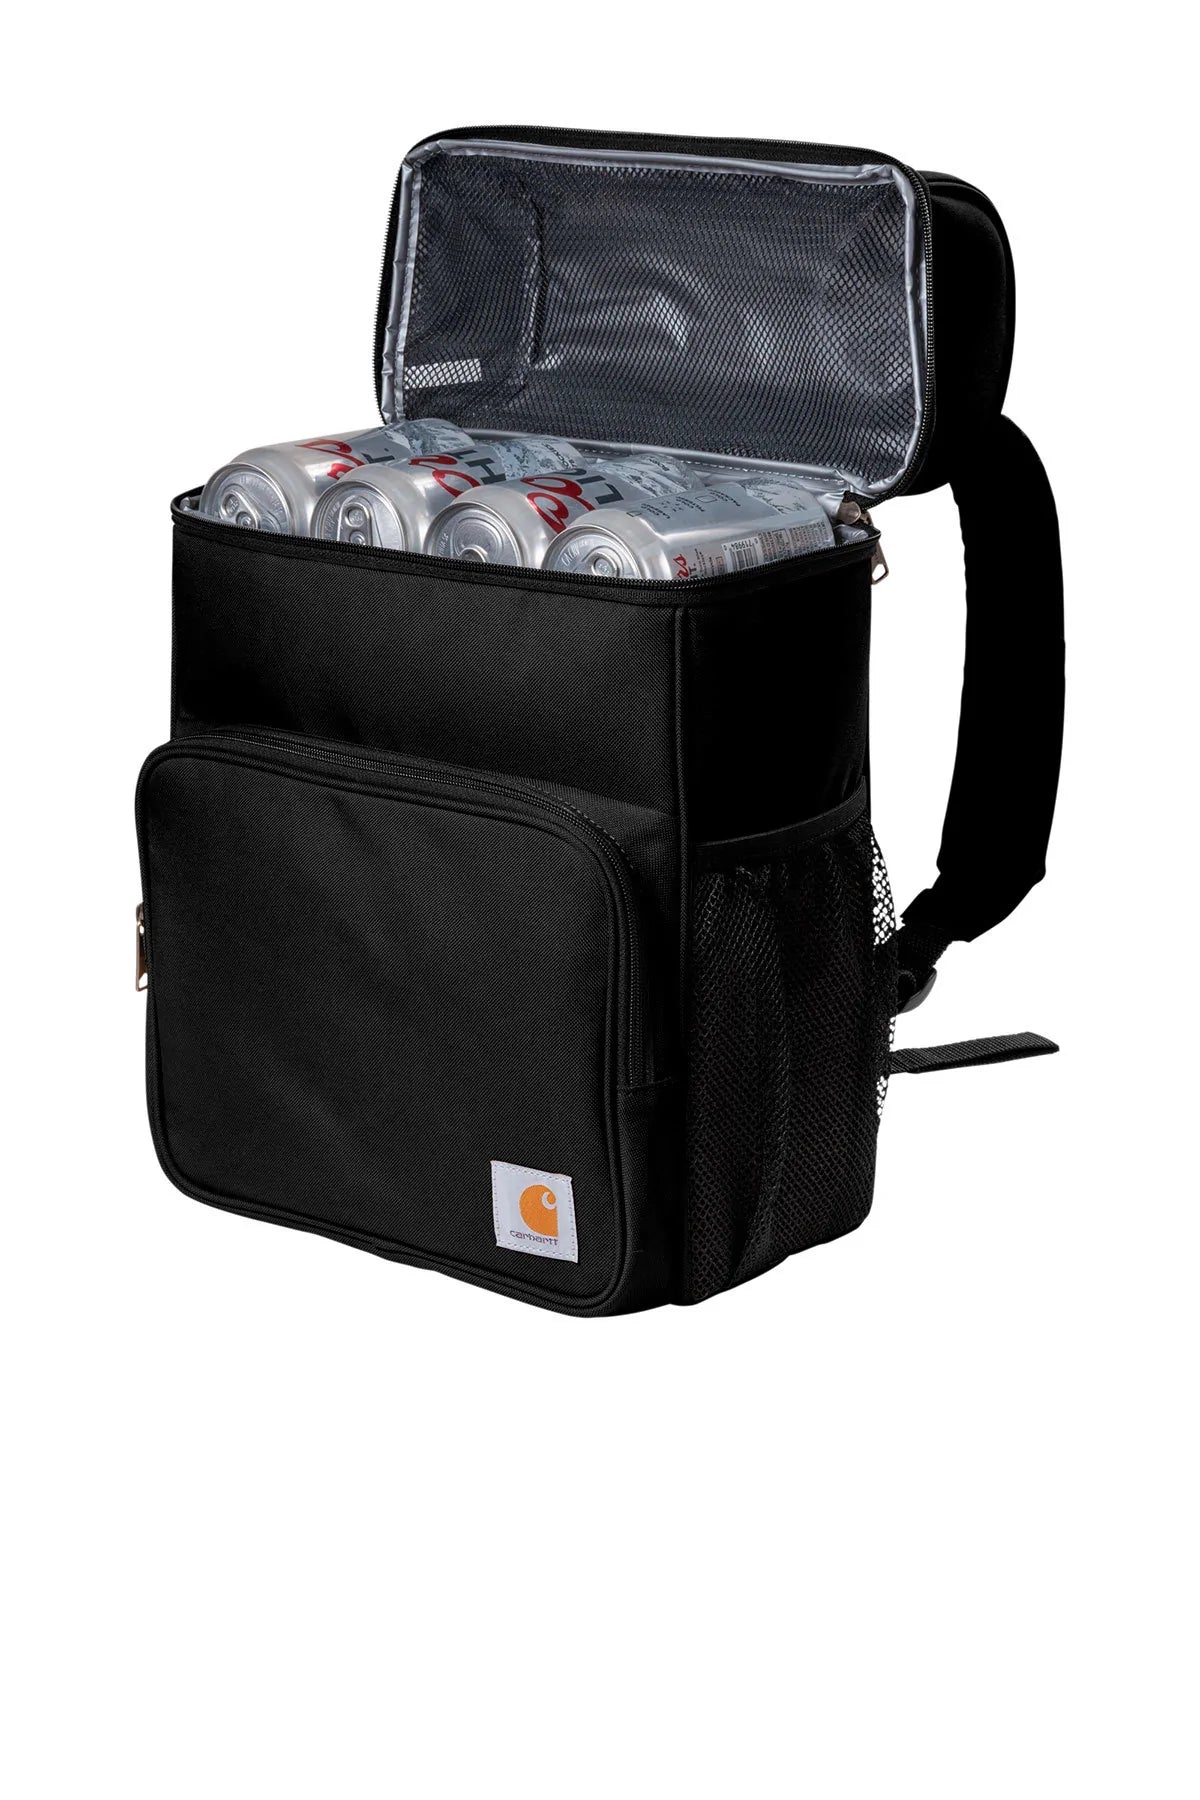 Carhartt Custom Backpack Coolers 20-Can, Black